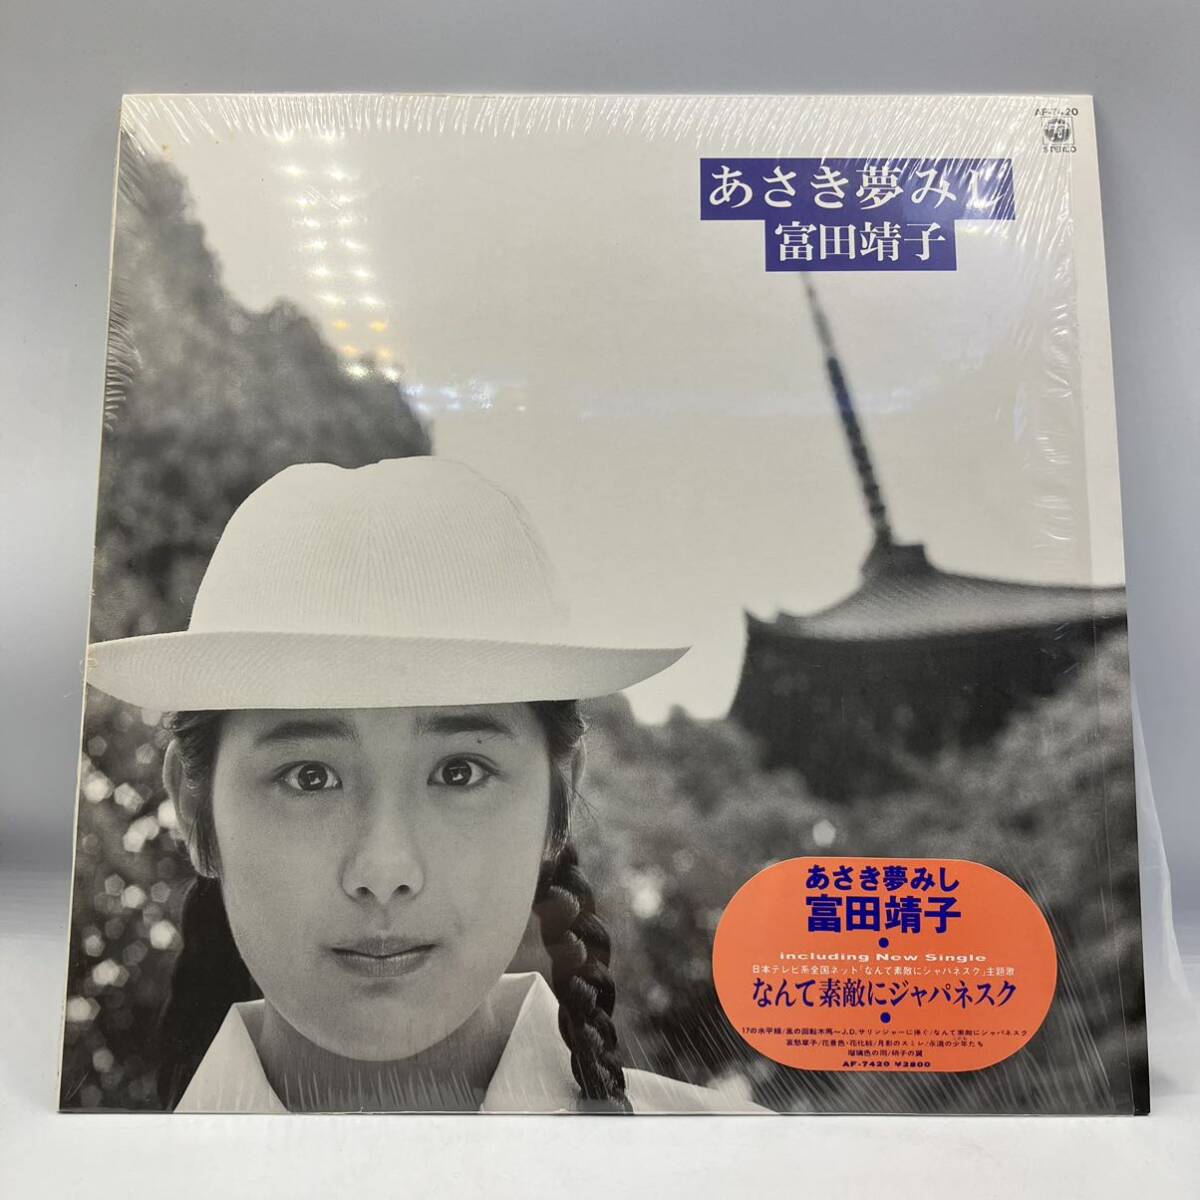 A0414 [LP] Yasuko Tomita Dreaming